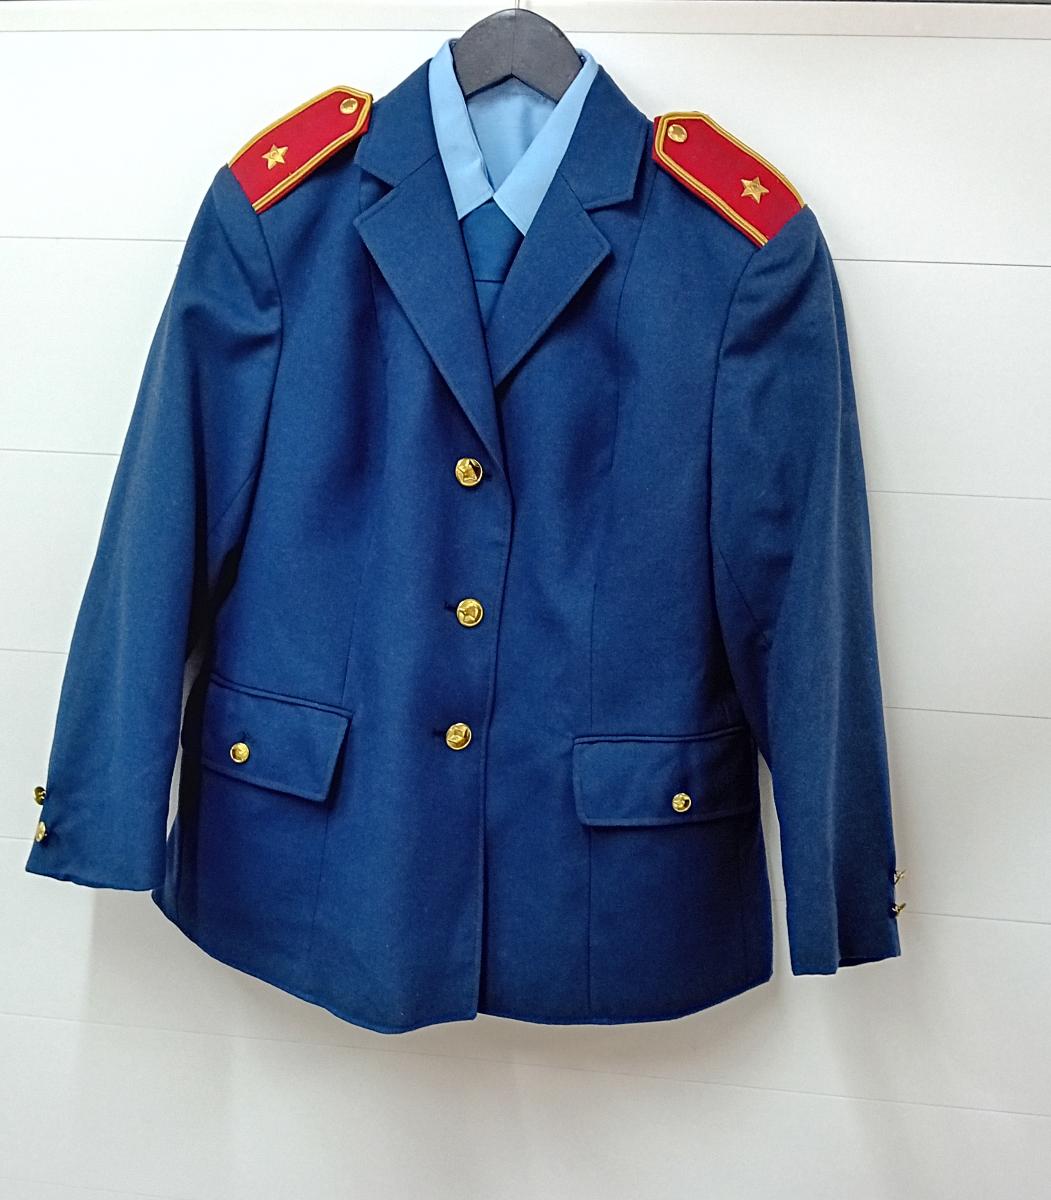 Dámska uniforma SNB,VB, Polícia ČSSR - Zberateľstvo